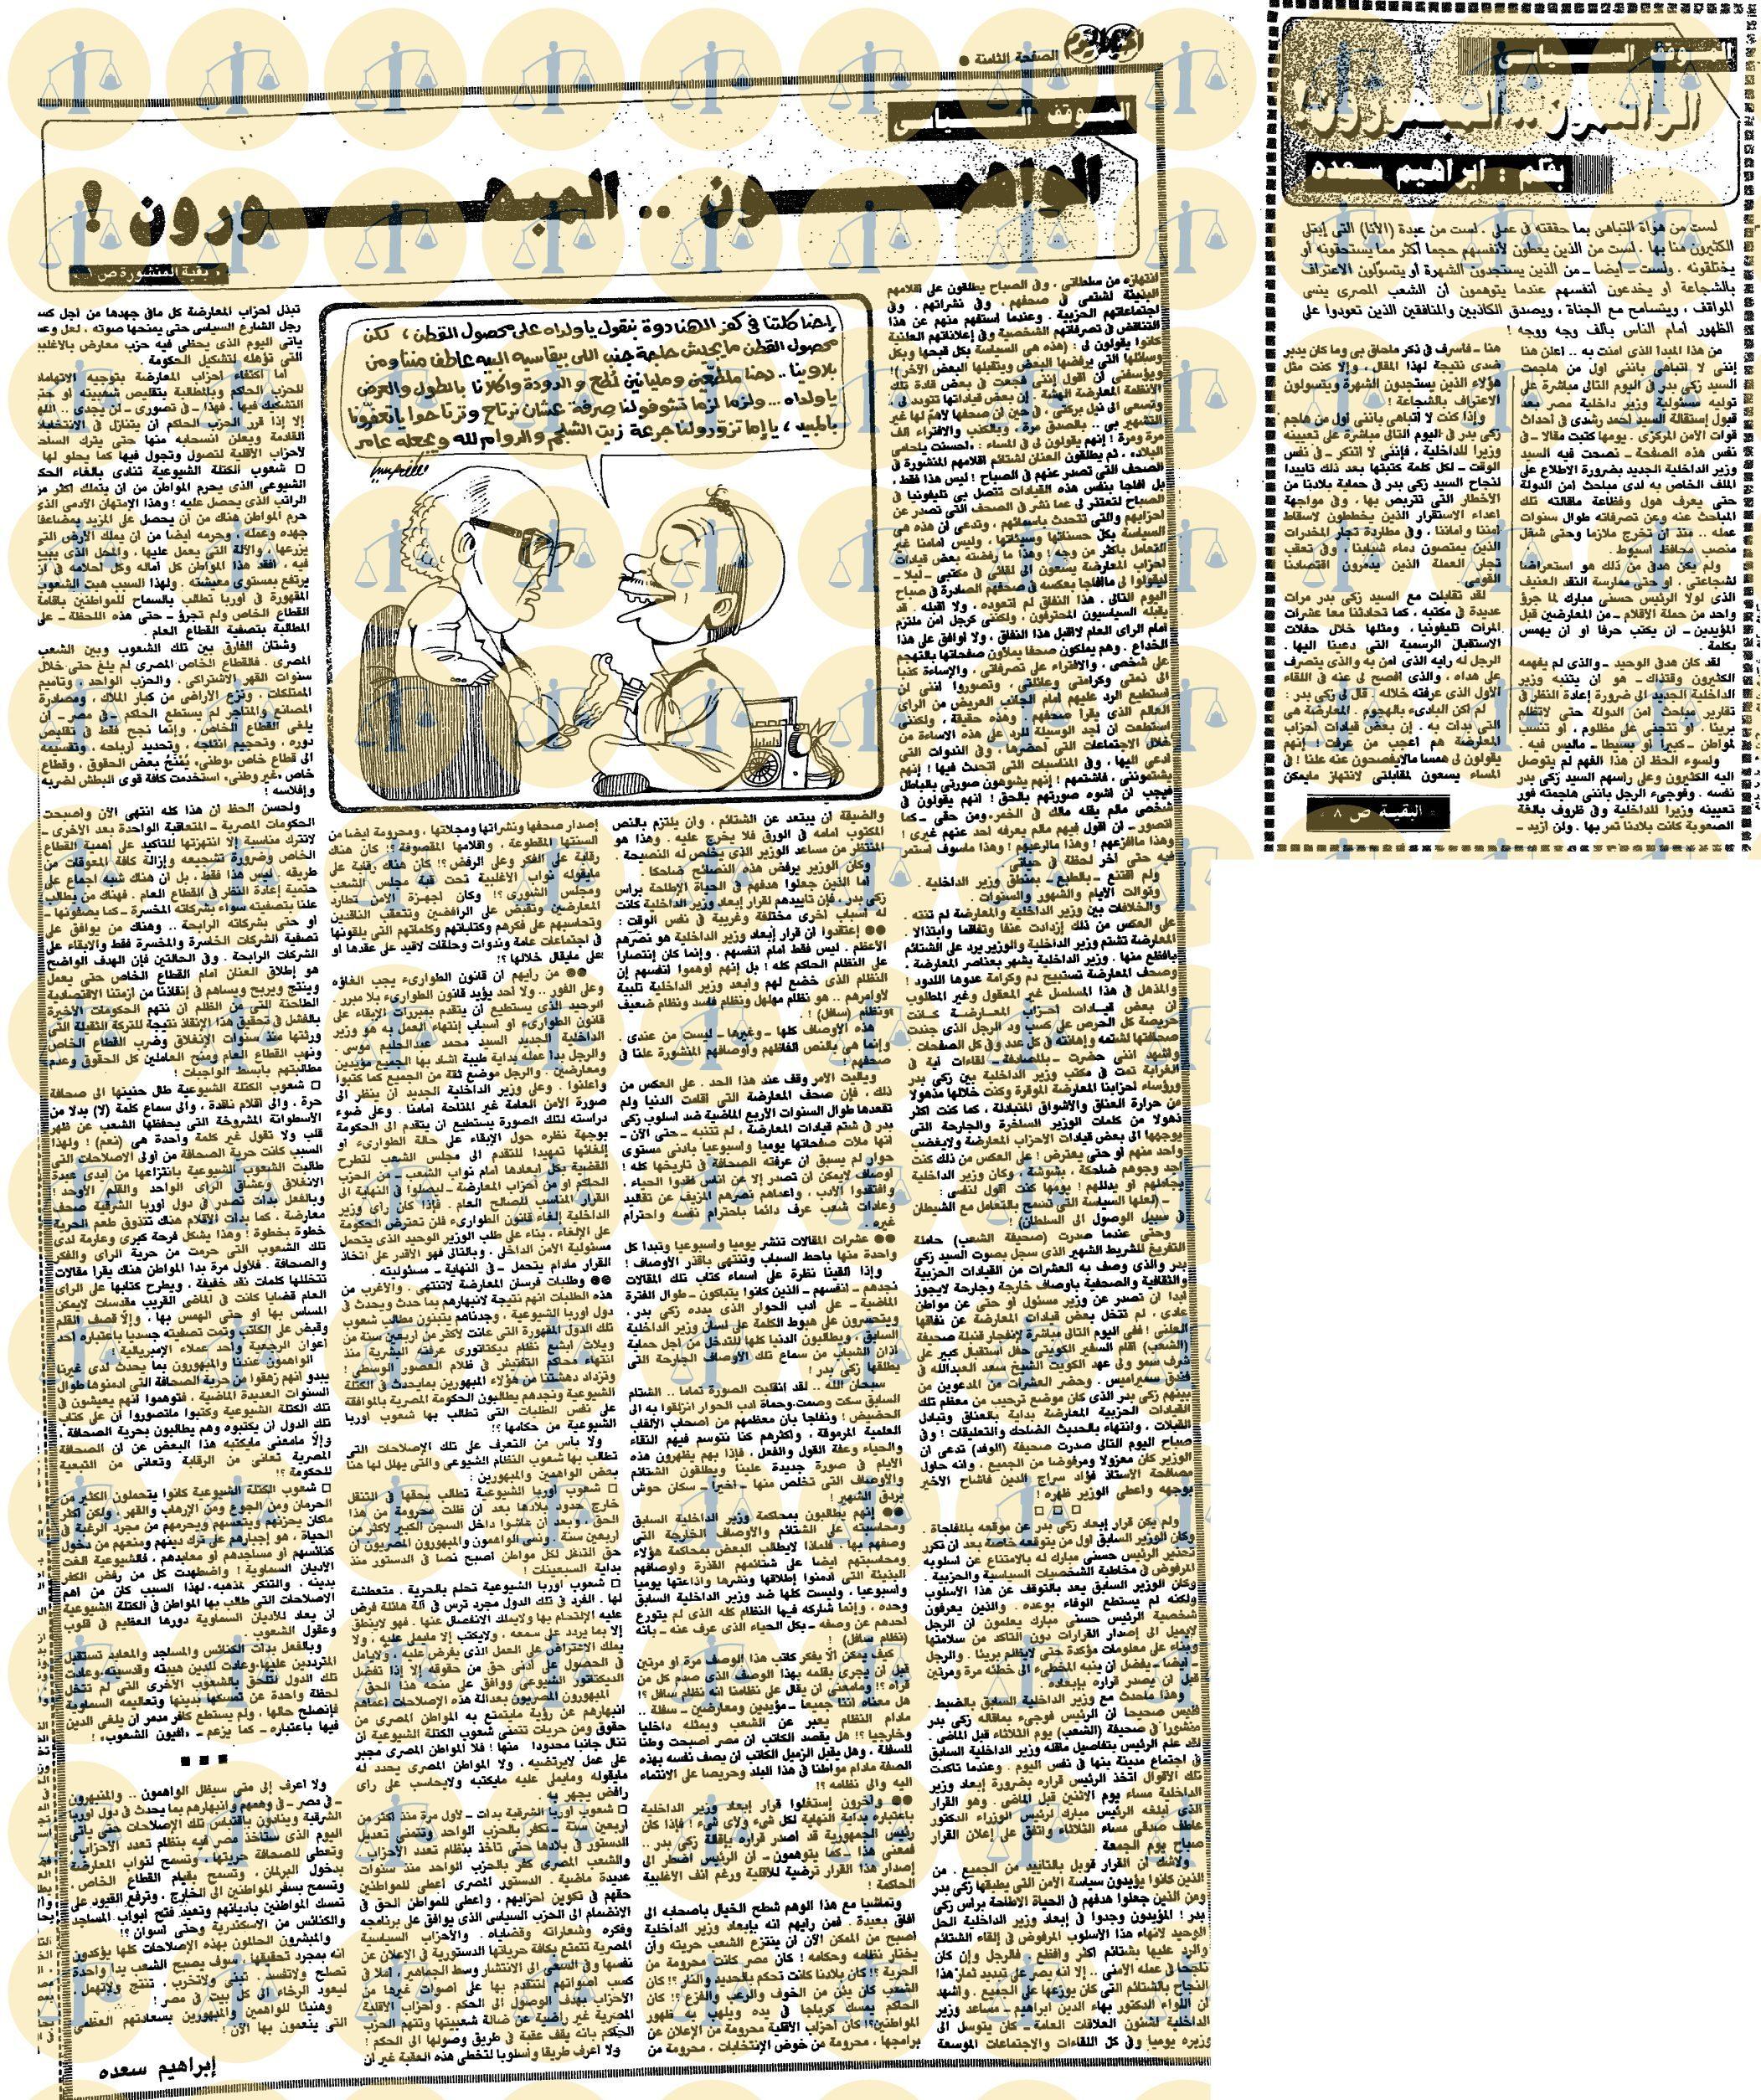 مقال إبراهيم سعدة، أخبار اليوم، 20 يناير 1990م، ص1 و8